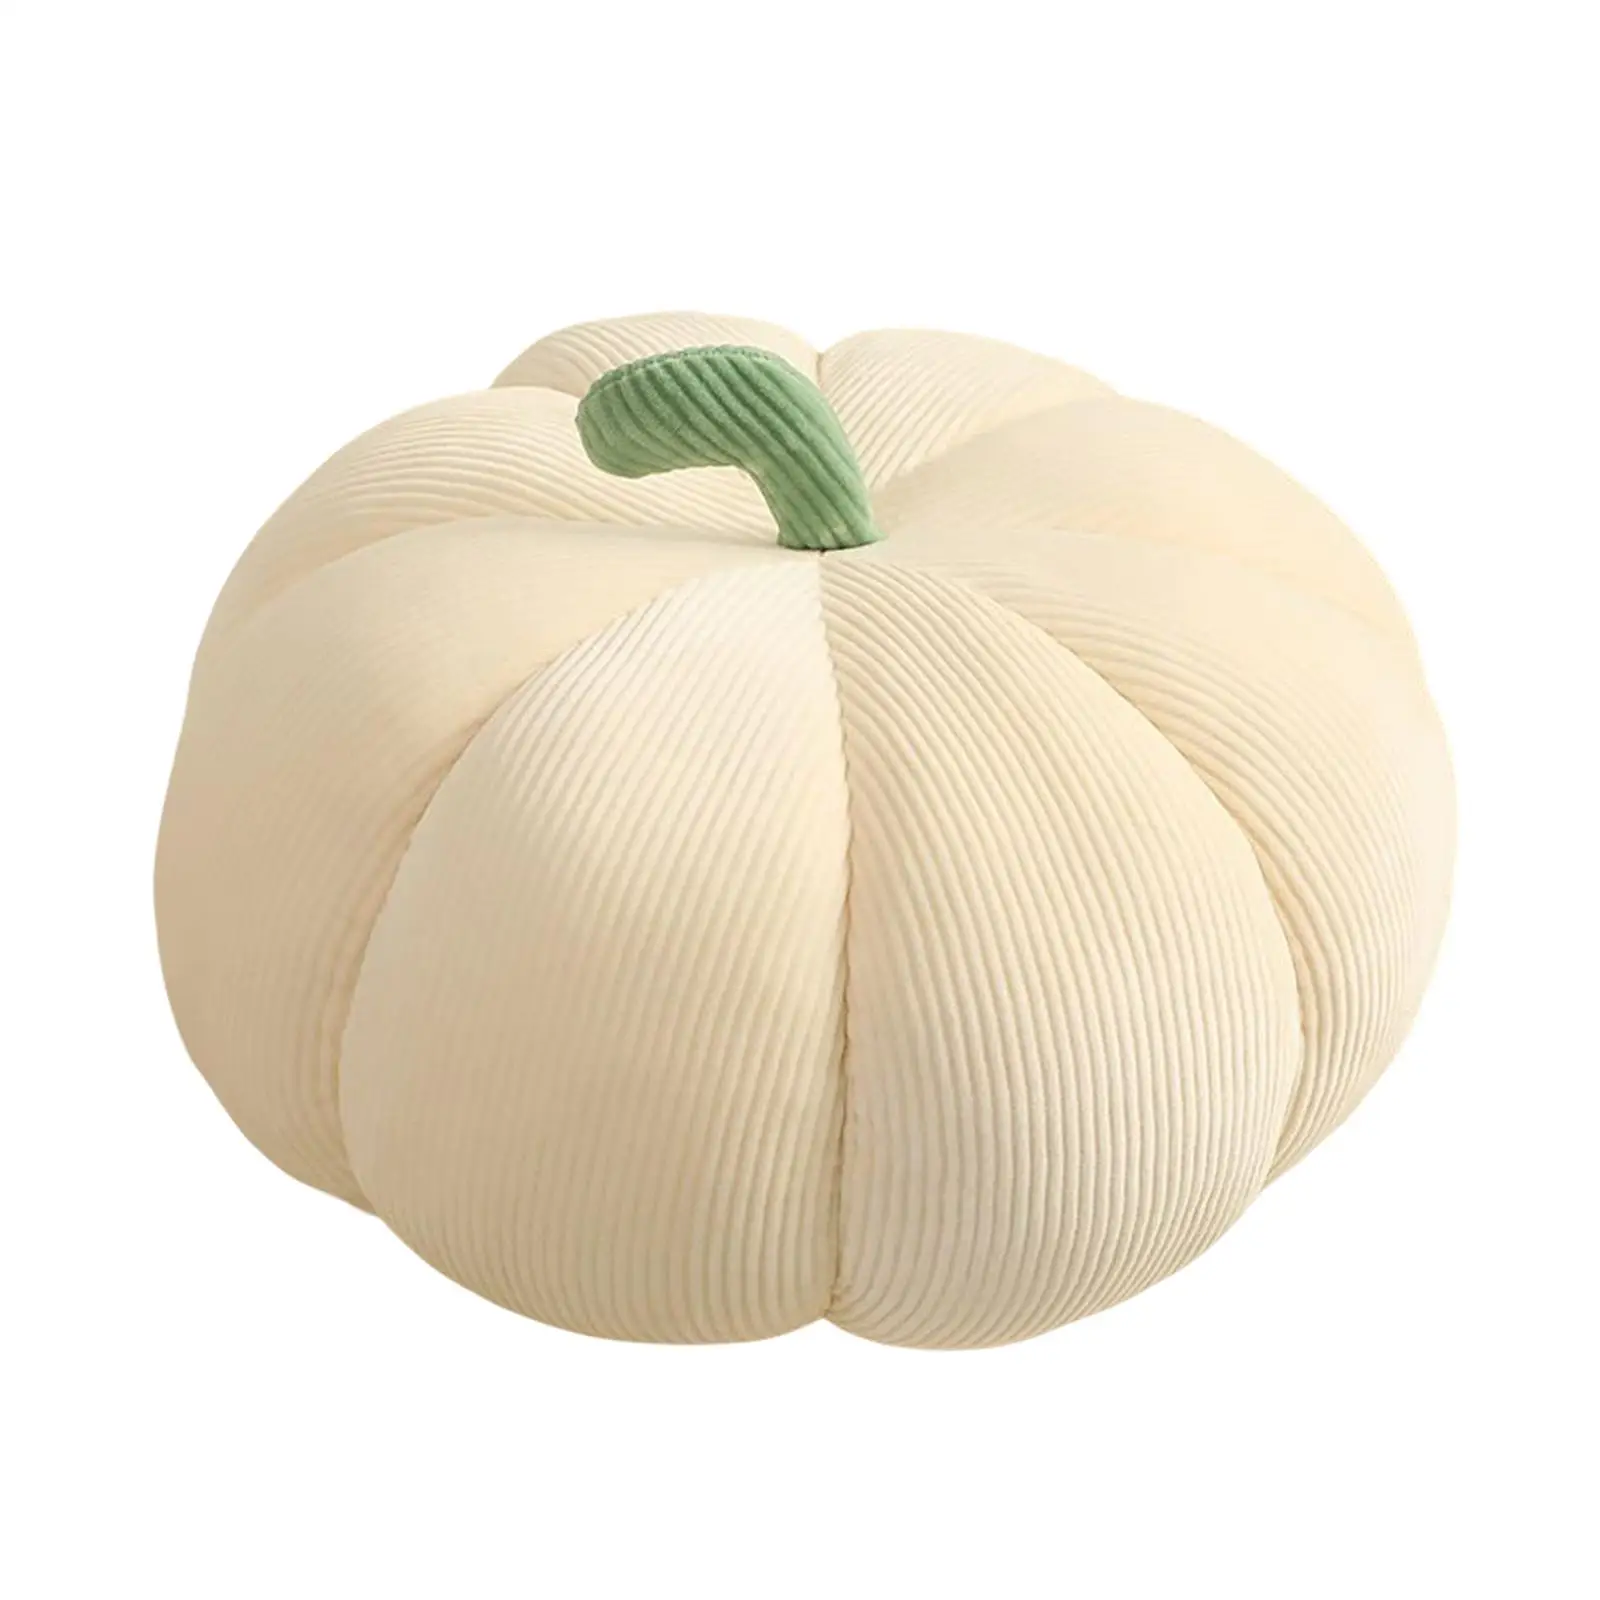 Plush Stuffed Pumpkin Throw Pillow Autumn Decoration Soft for Halloween